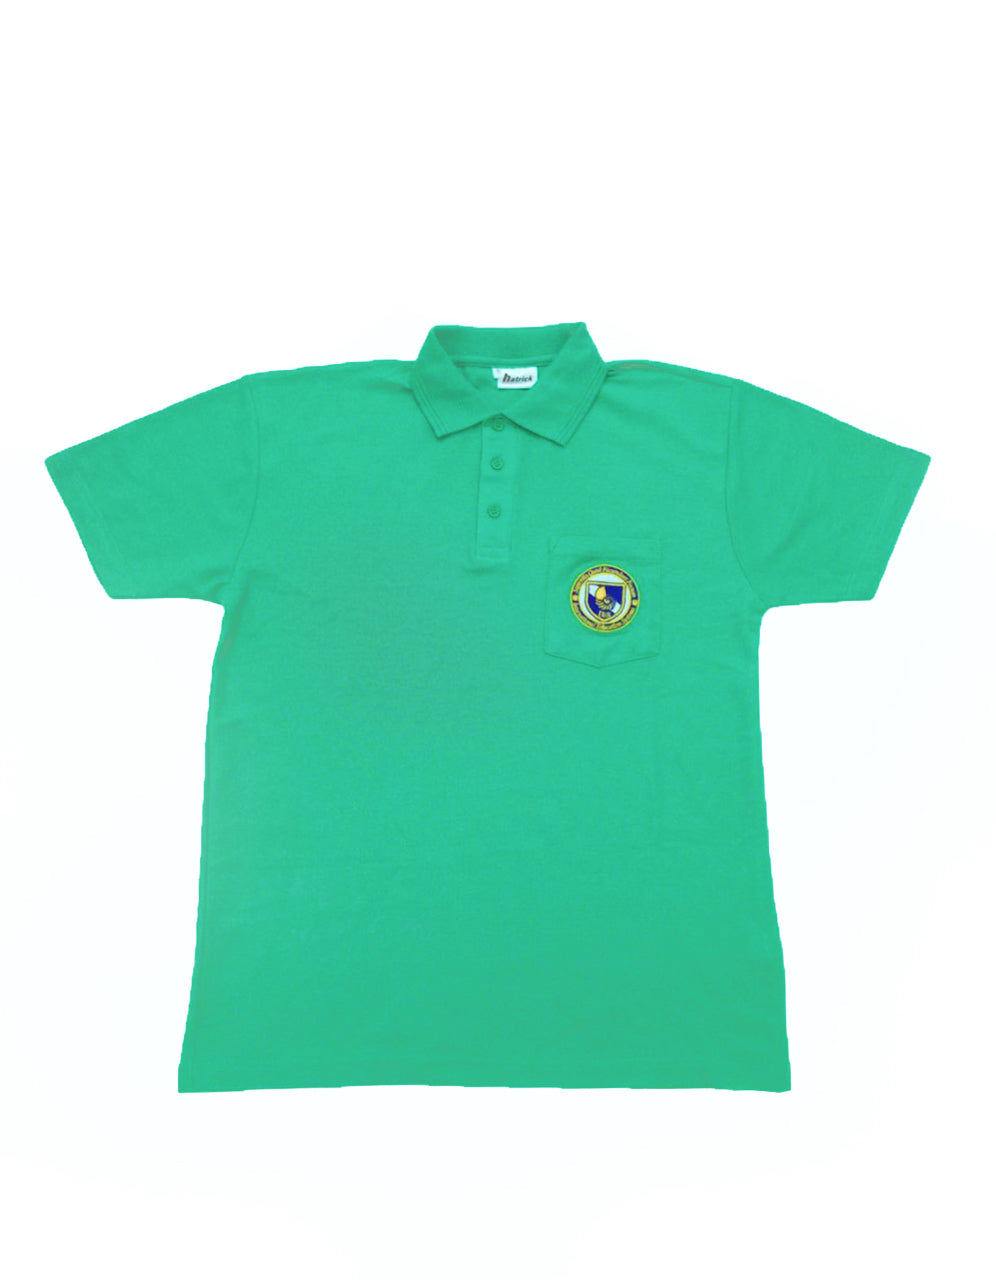 Green House Shirt